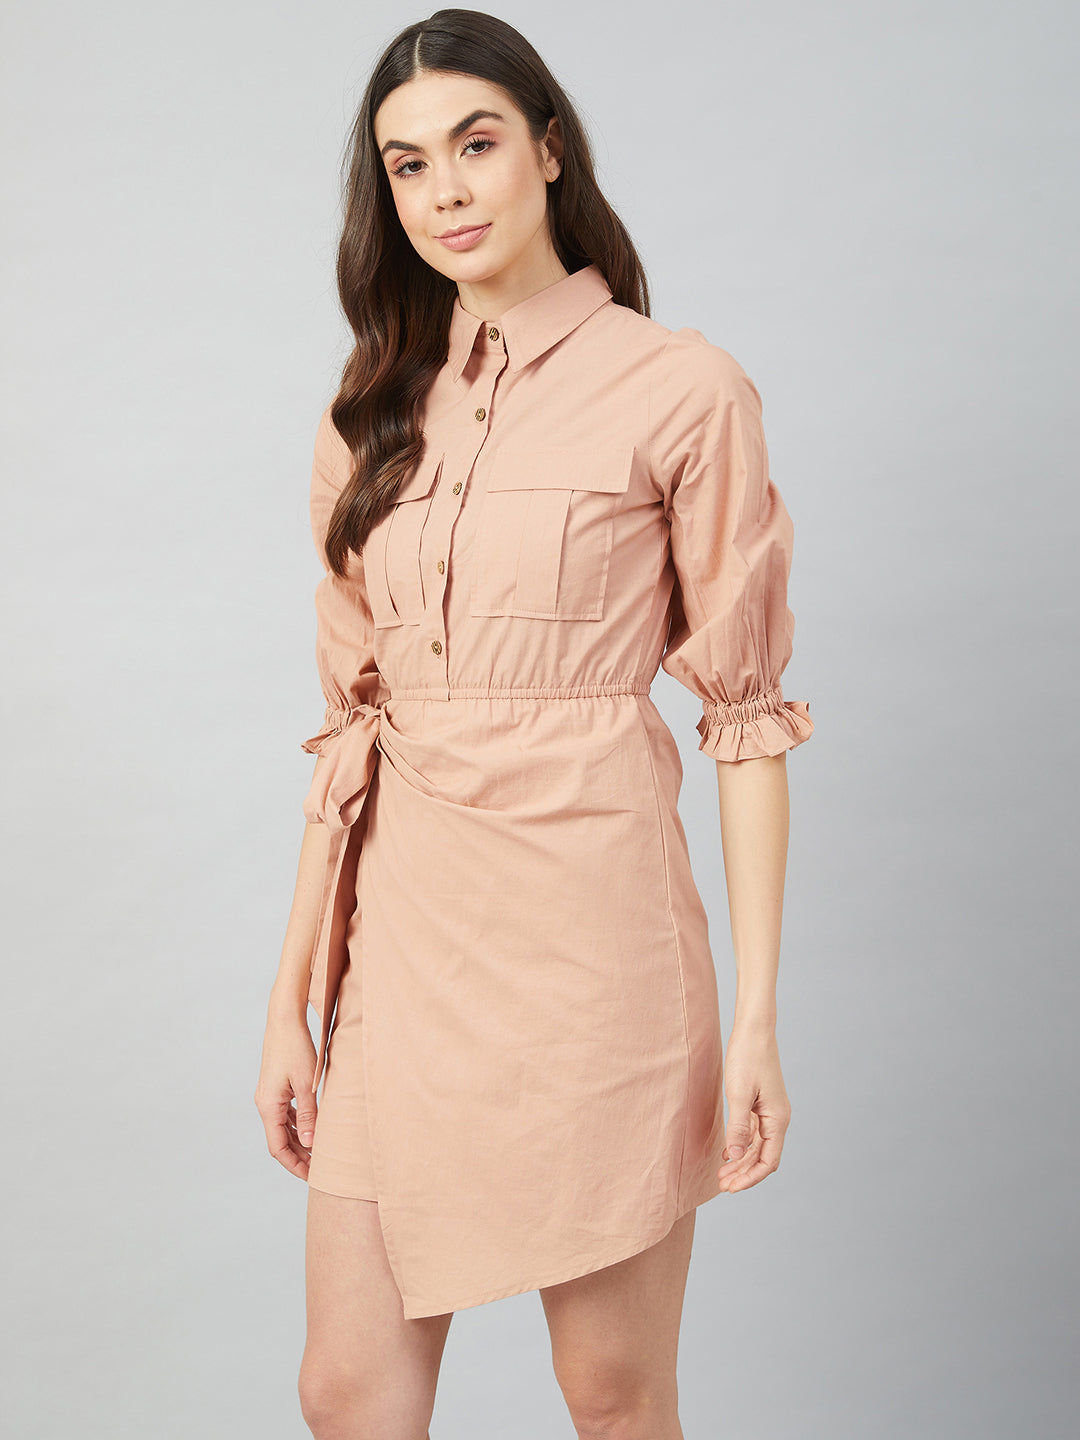 Athena Beige- Coloured Cotton Shirt Dress - Athena Lifestyle